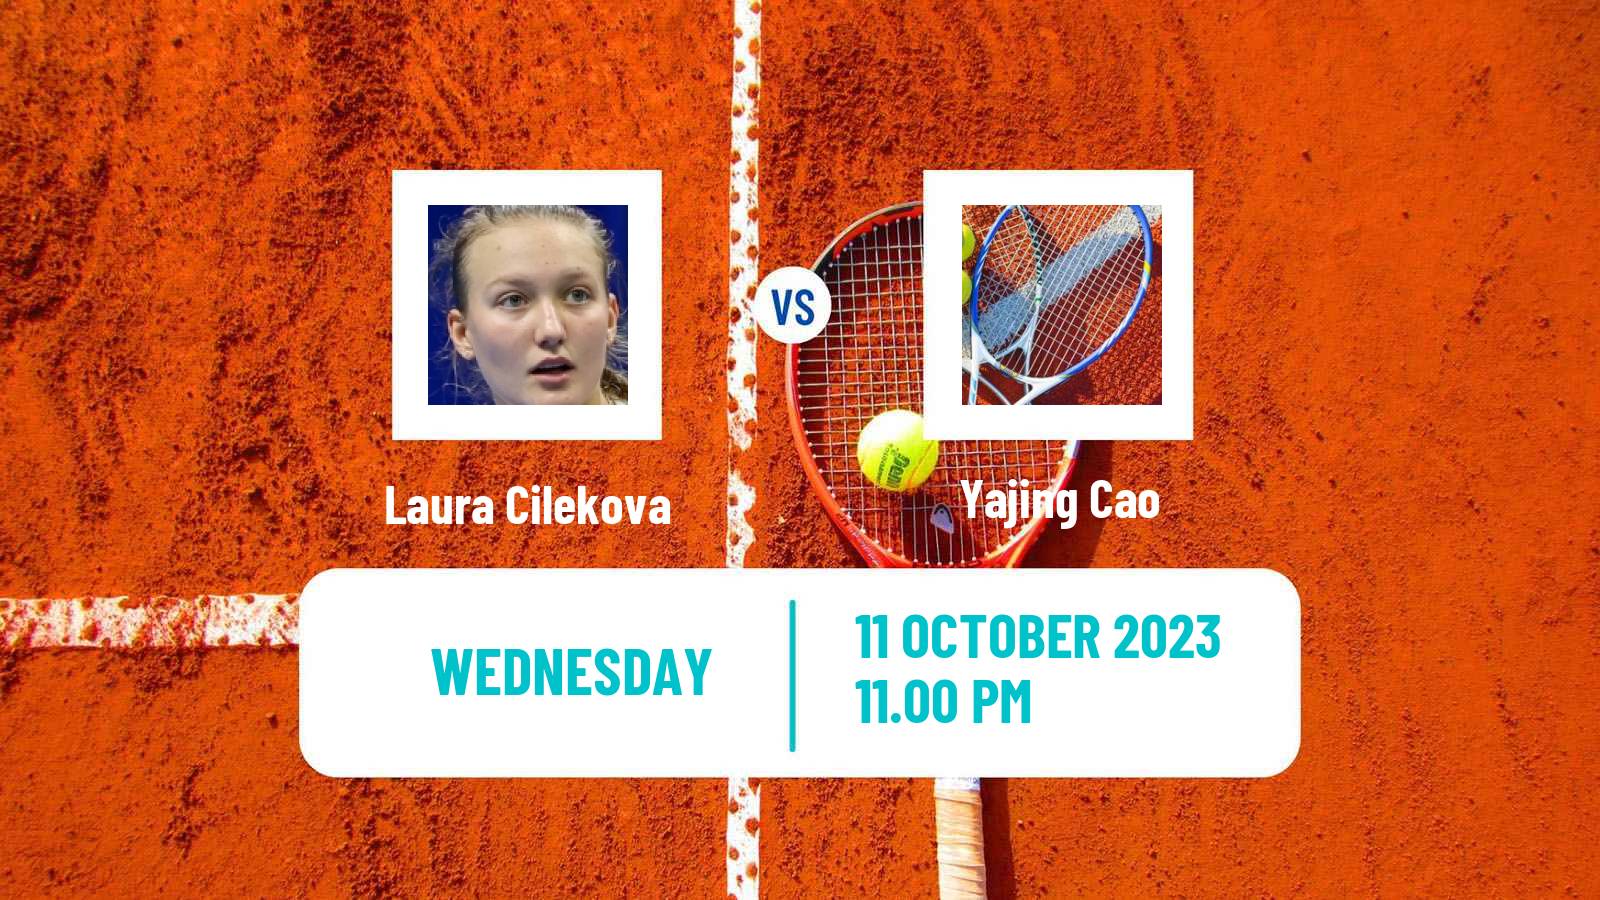 Tennis ITF W15 Hua Hin Women Laura Cilekova - Yajing Cao